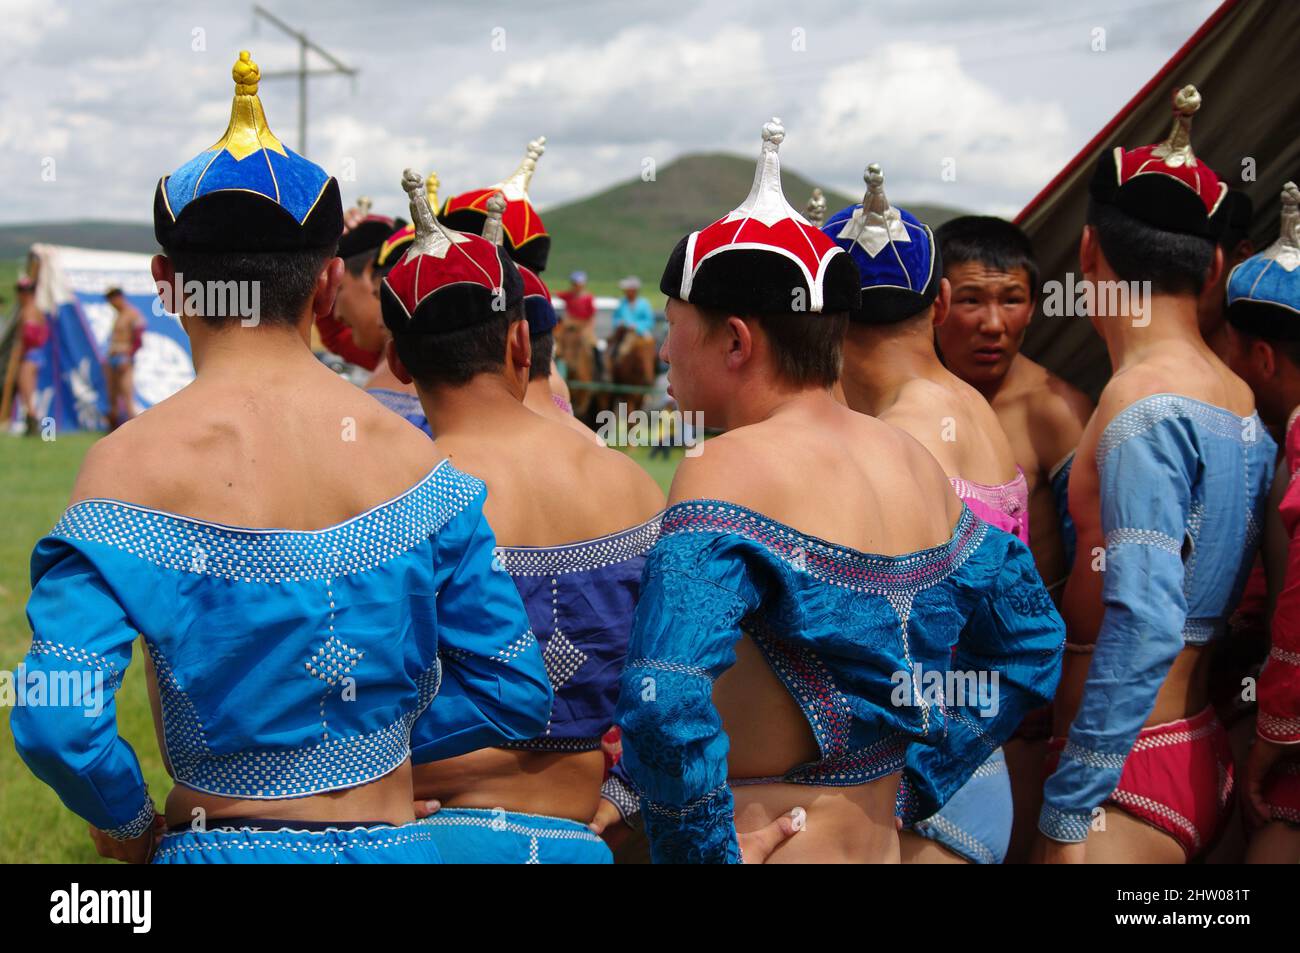 Lutte Mongole, Naadam, juillet jeux tradizionnels mongols, Mongolie, Asie Foto Stock